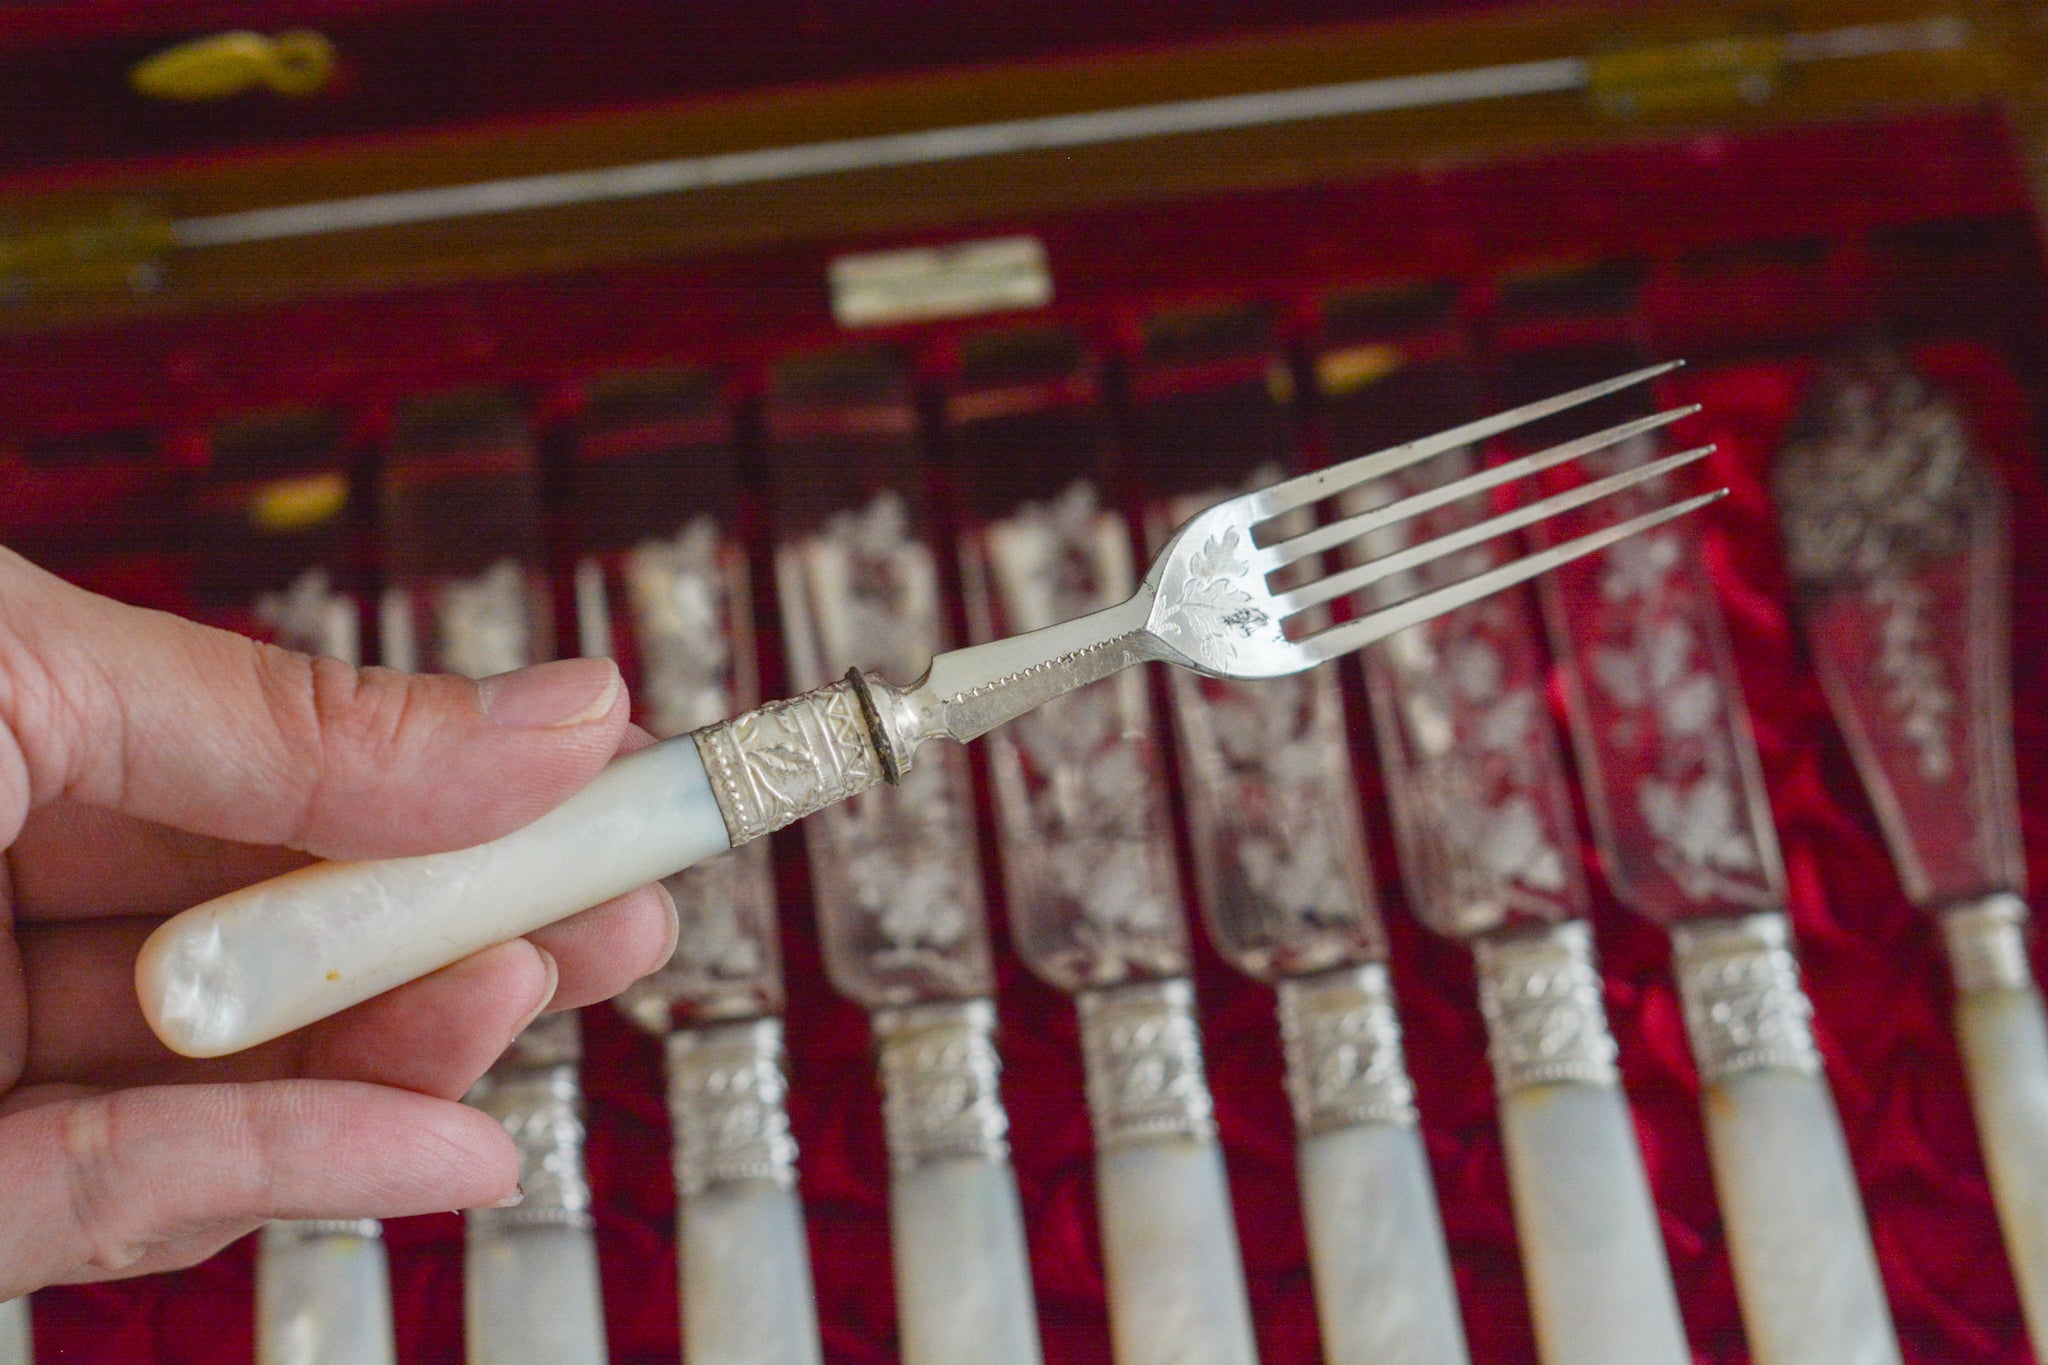 英国アンティーク　木箱入り白蝶貝ハンドルの美しいデザートカトラリー8組（フォーク＆ナイフ１6本）とサービングナイフとスプーン計18本セット